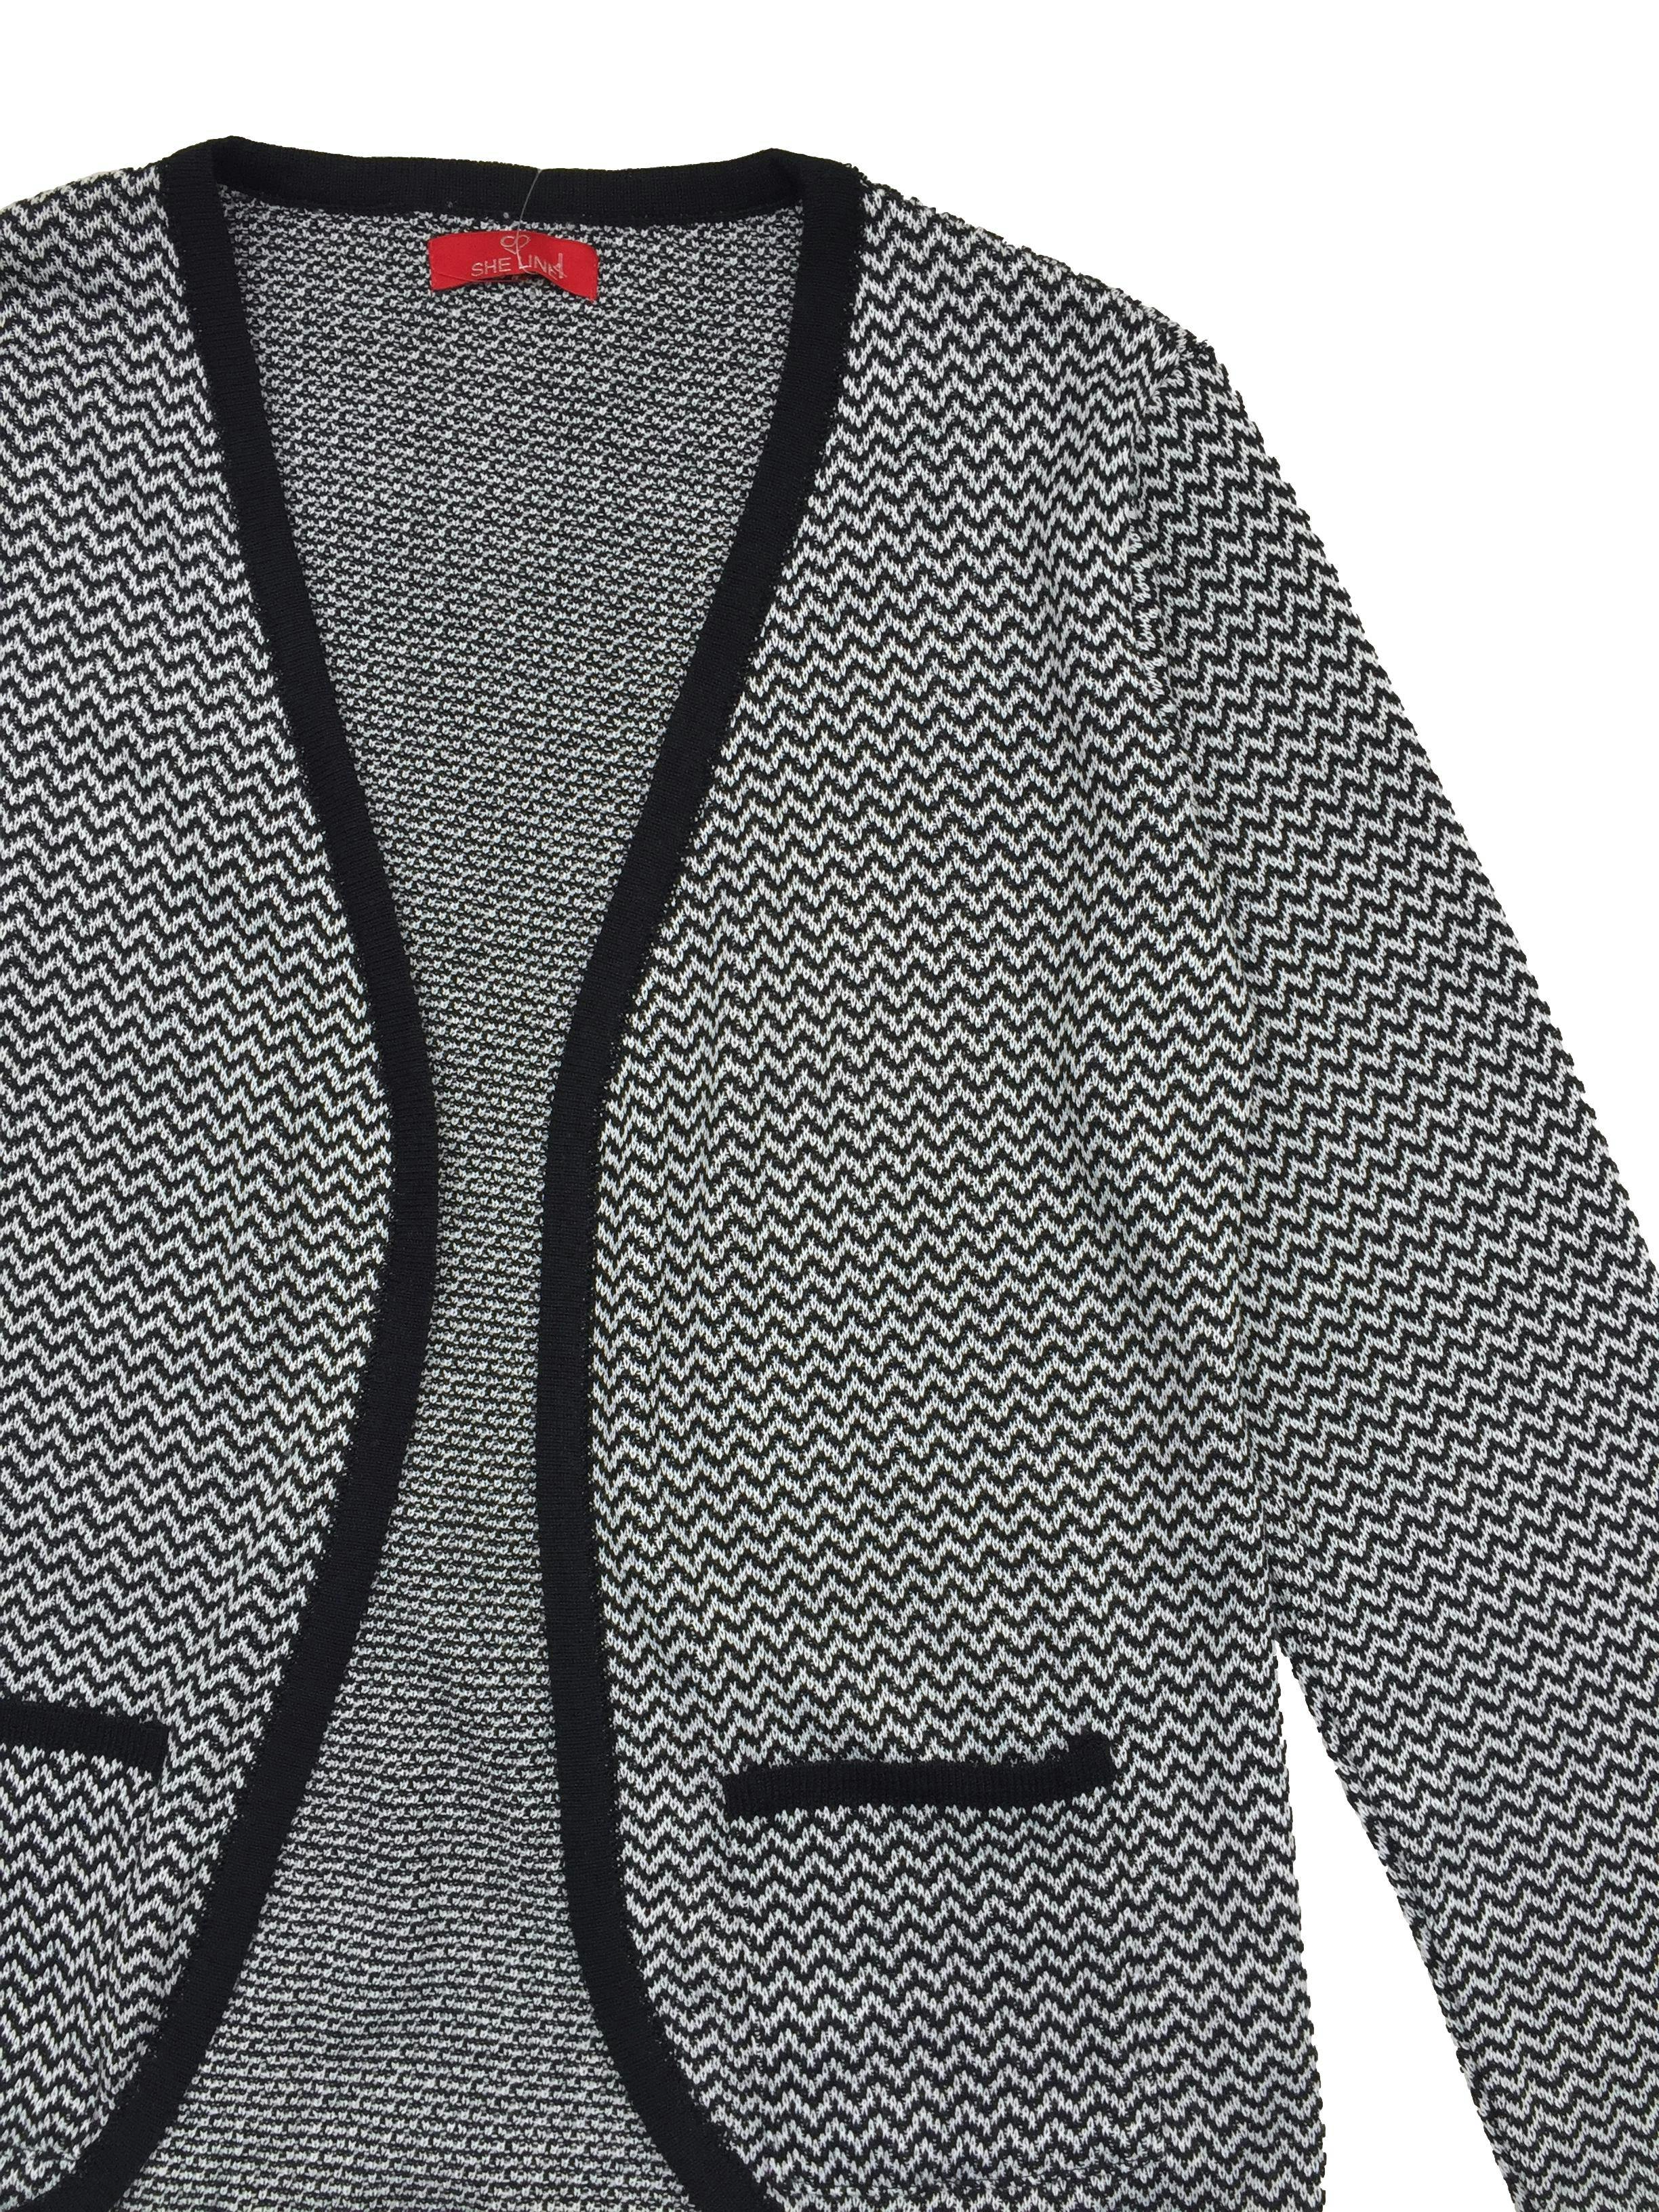 Cardigan tejido zig zag blanco y negro, modelo abierto con bolsillos. Busto 96cm, Largo 60cm.